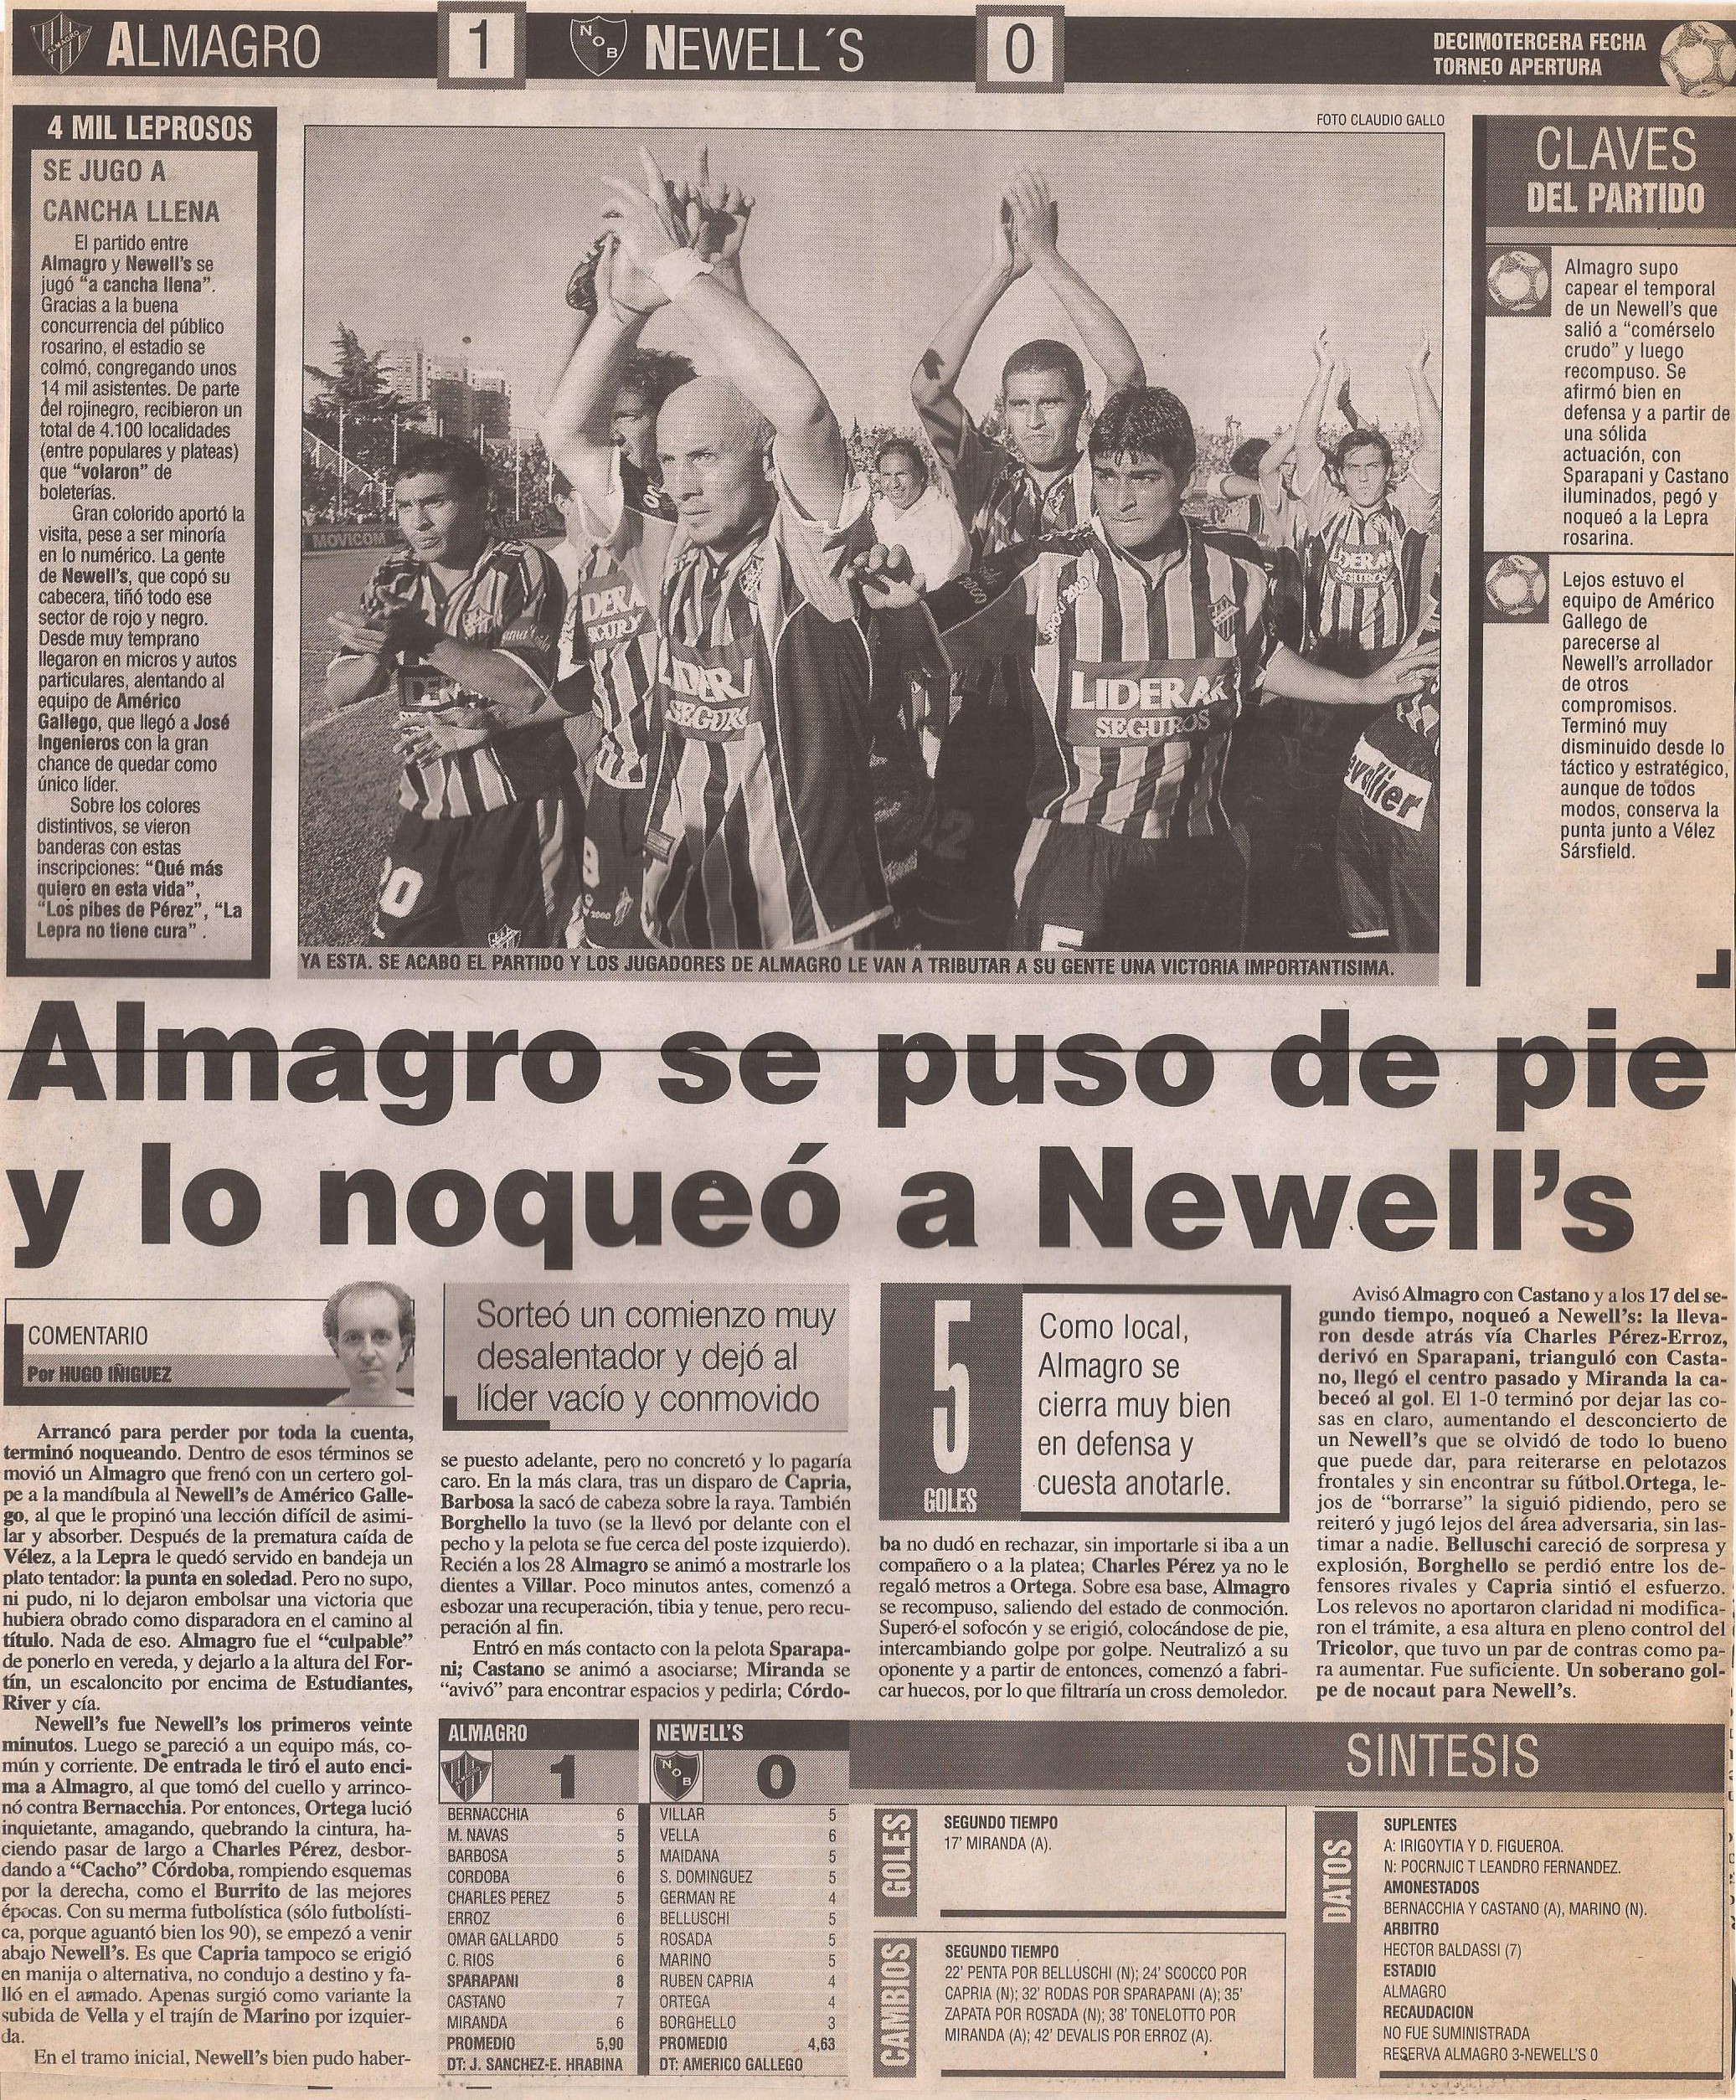 2004-05 Primera Division - Almagro vs Newells - Diario Popular